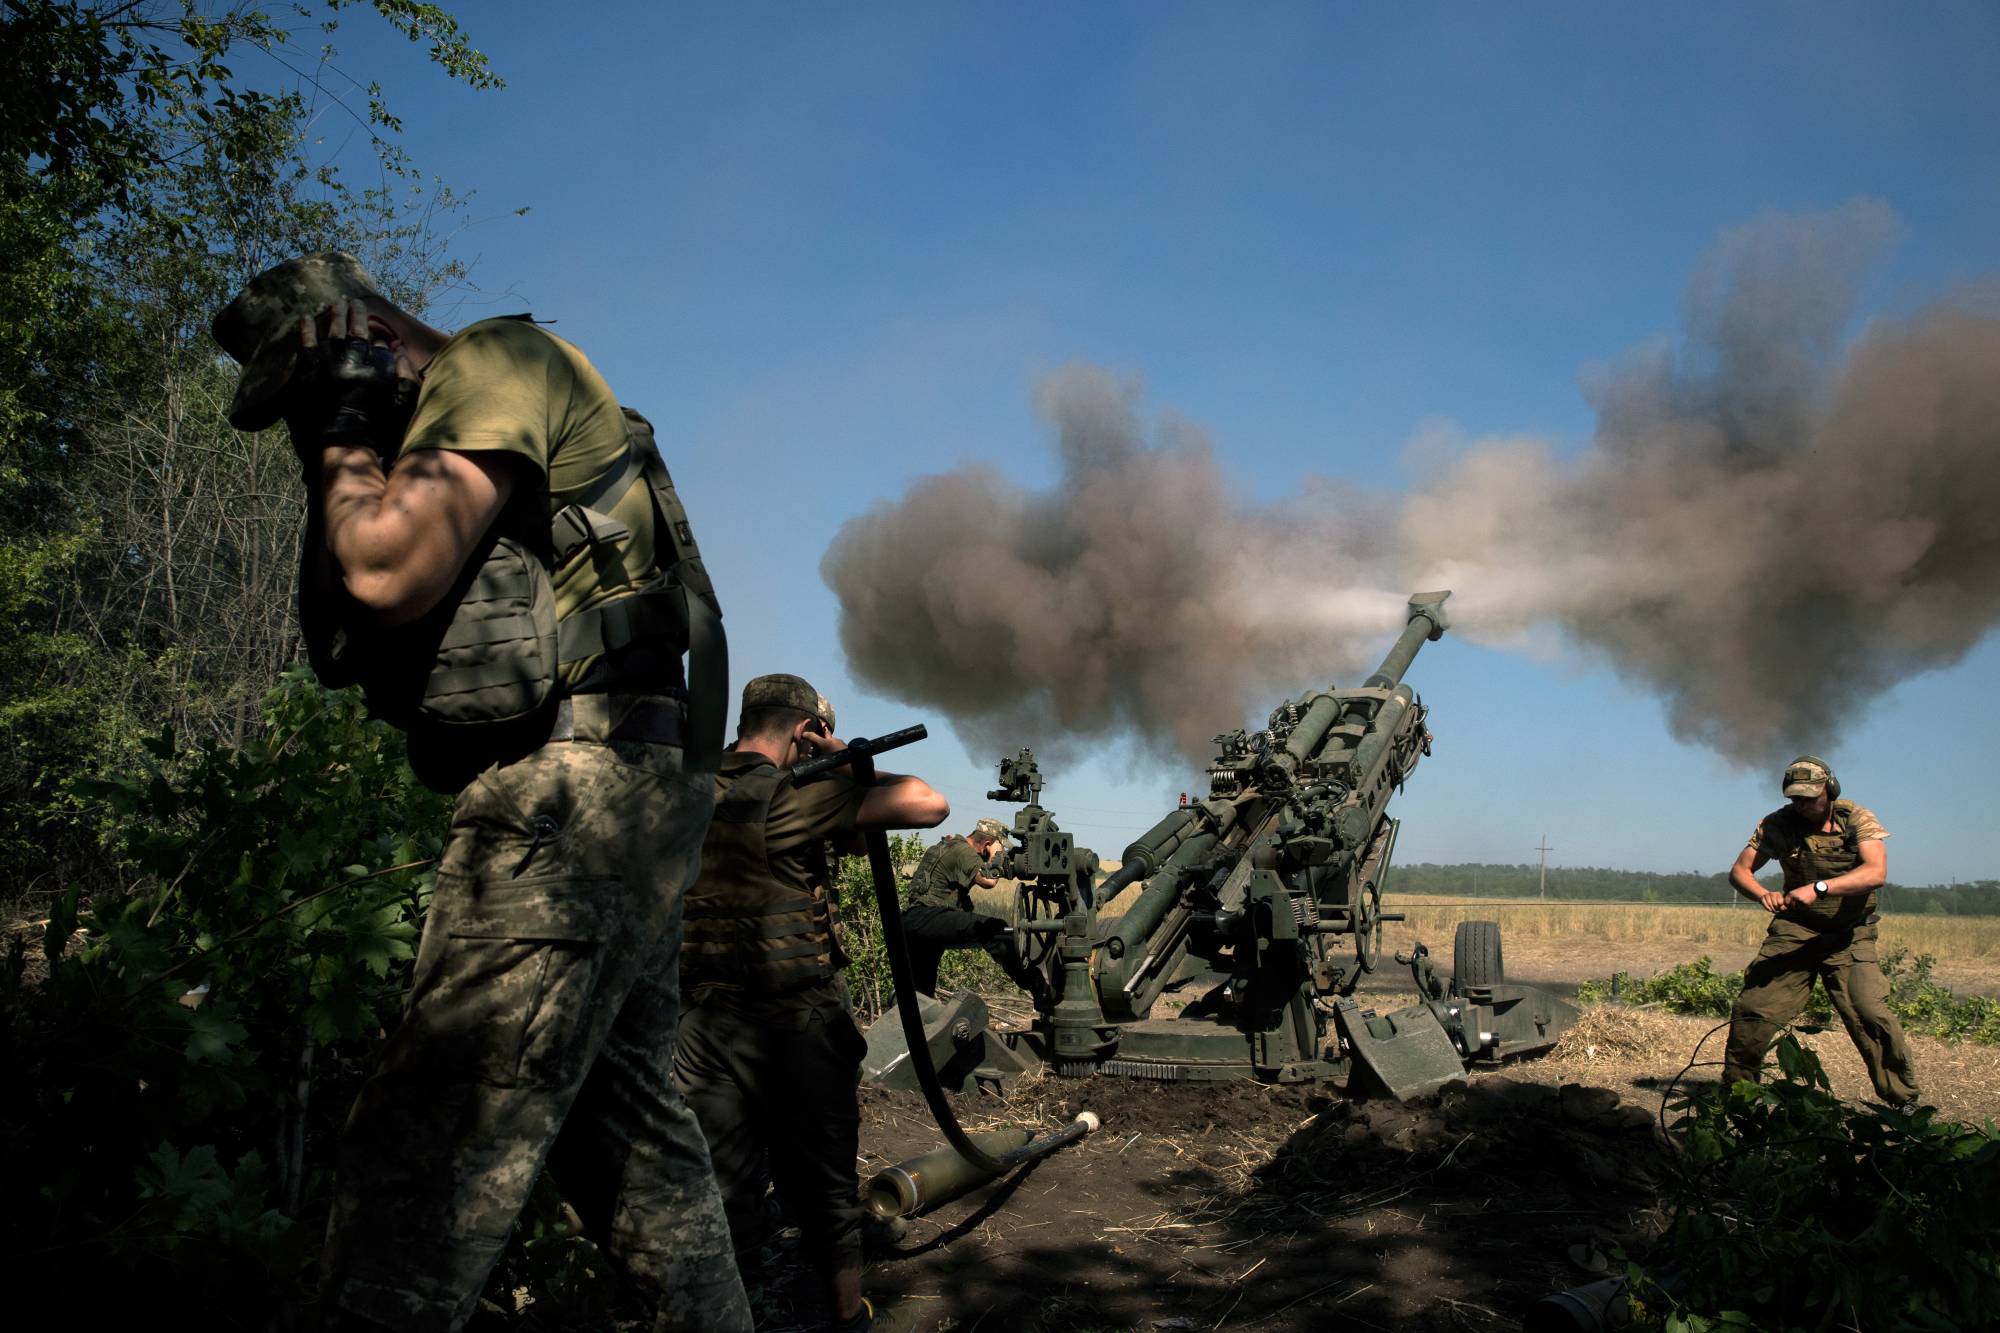 Lựu pháo M777 lộ diện điểm yếu trên chiến trường Ukraine khiến Lầu Năm Góc “đau đầu”